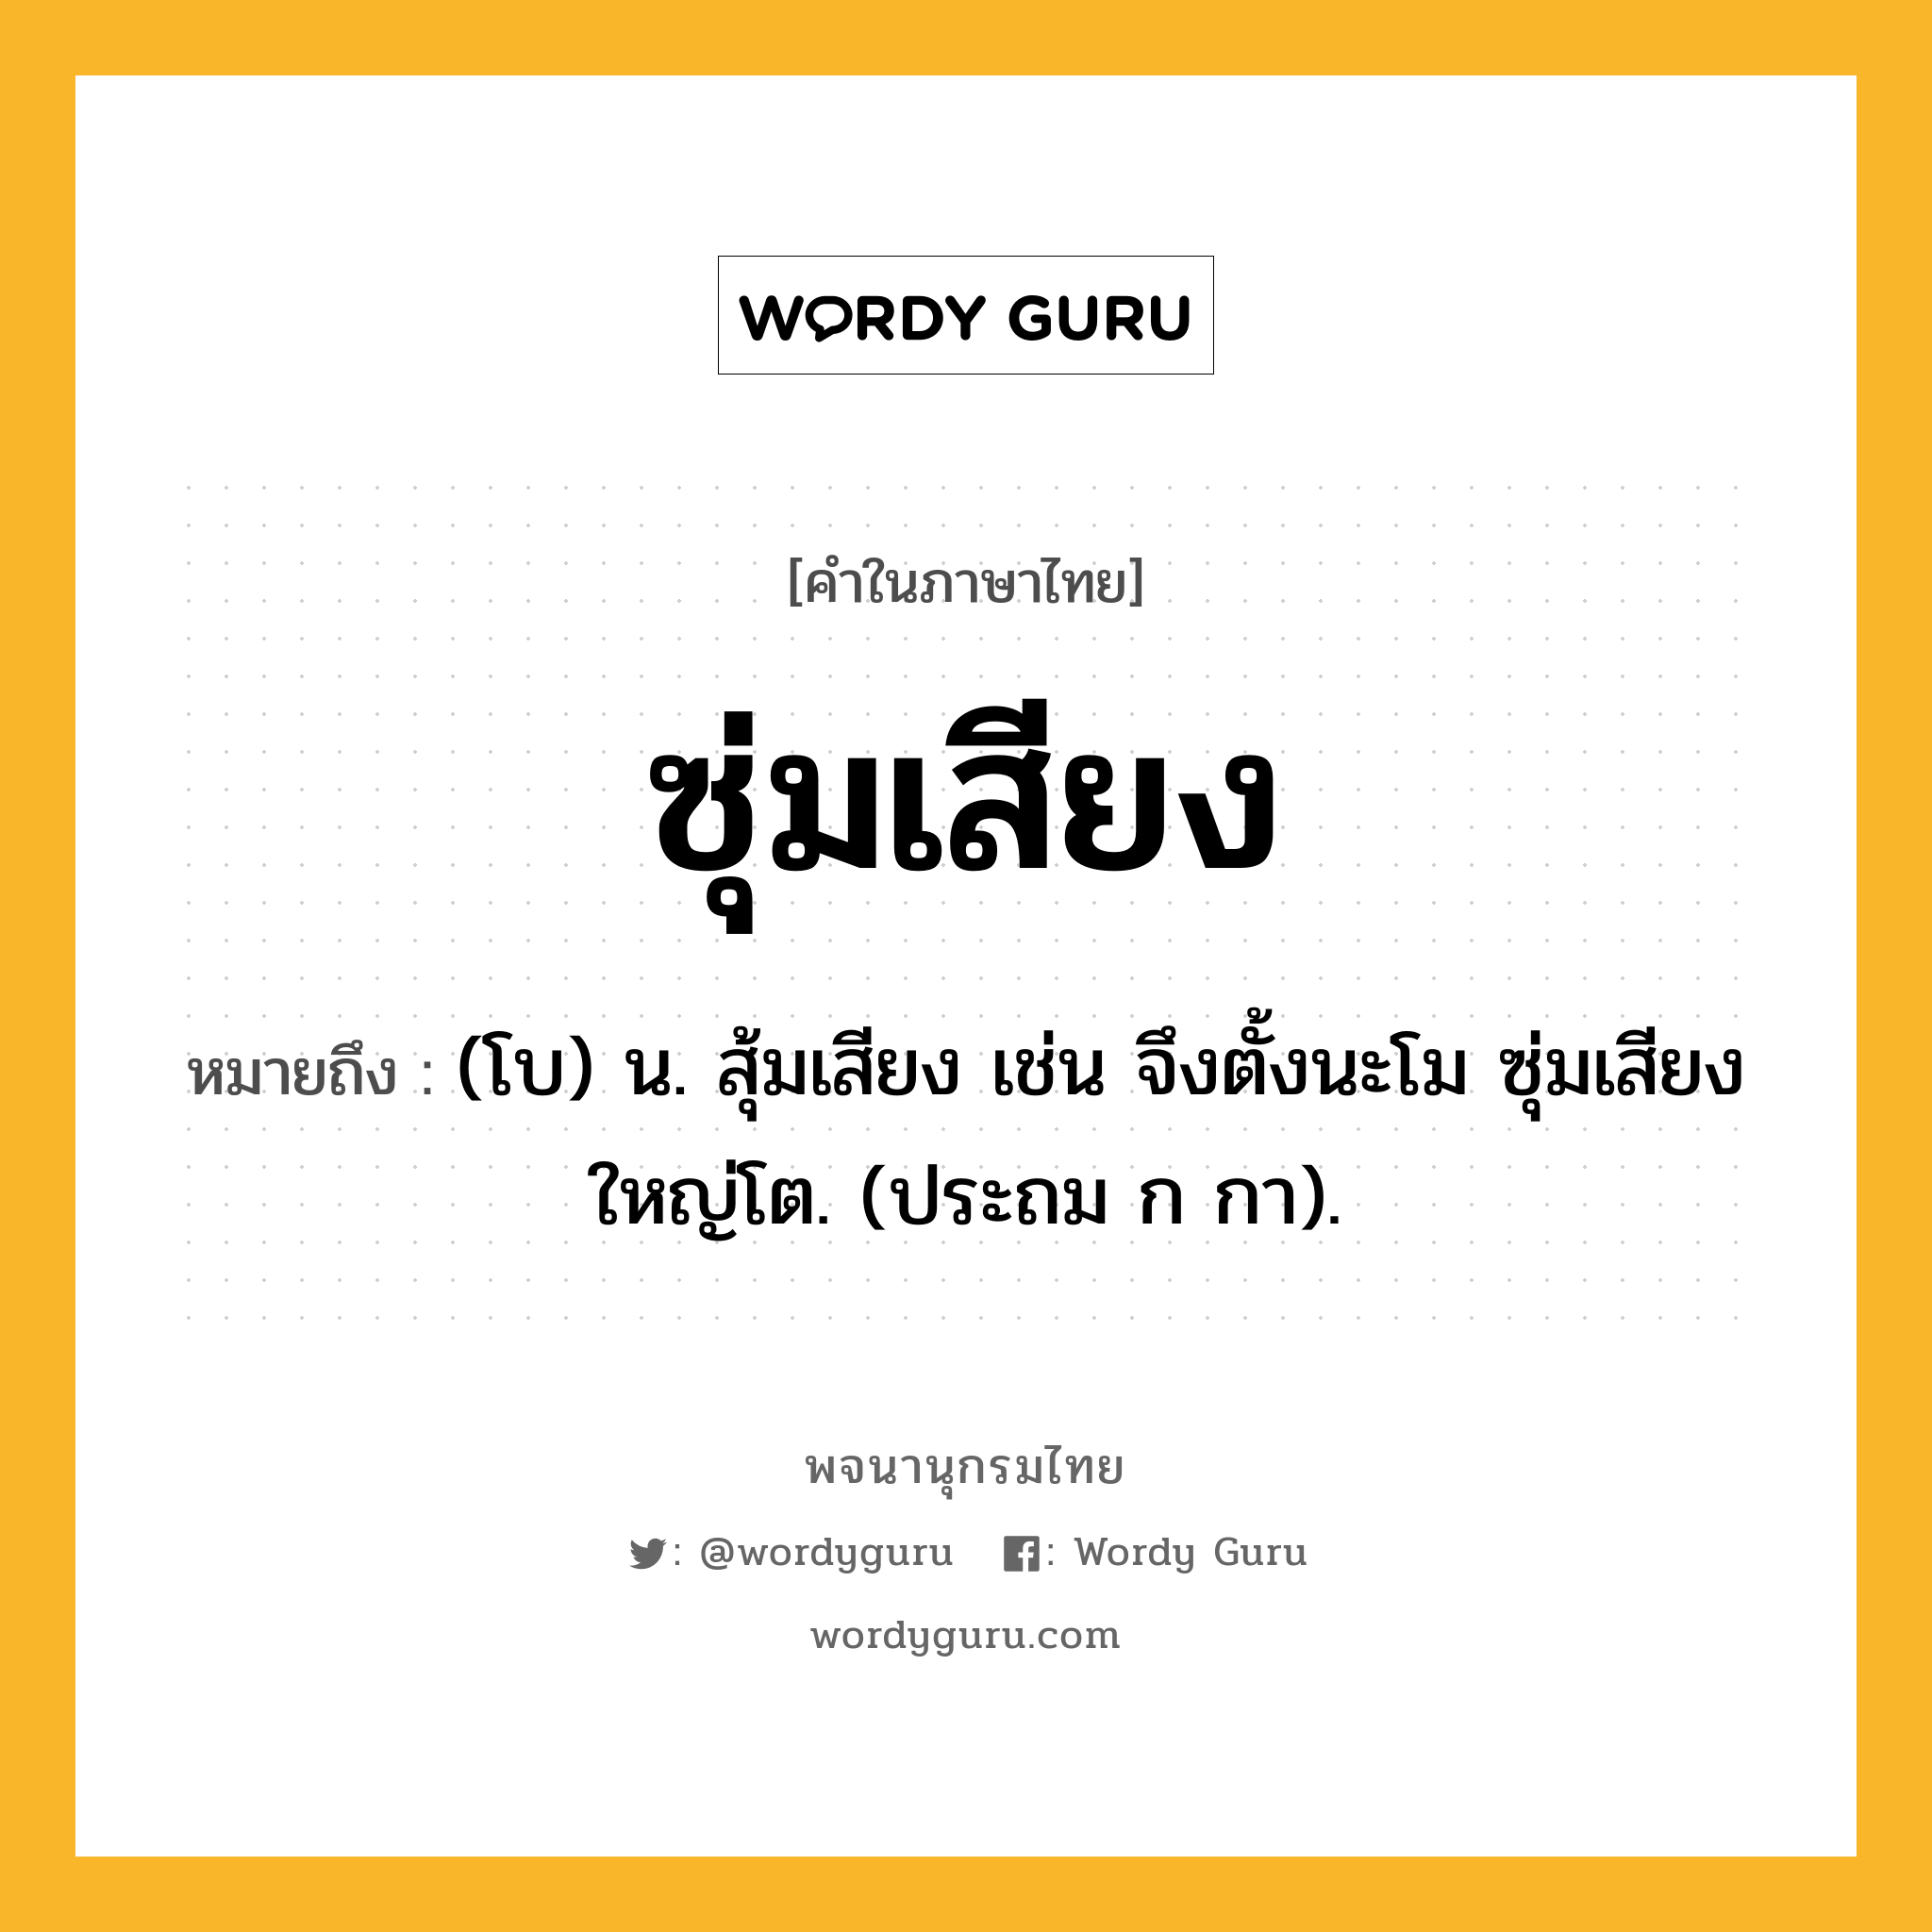 ซุ่มเสียง หมายถึงอะไร?, คำในภาษาไทย ซุ่มเสียง หมายถึง (โบ) น. สุ้มเสียง เช่น จึงตั้งนะโม ซุ่มเสียงใหญ่โต. (ประถม ก กา).